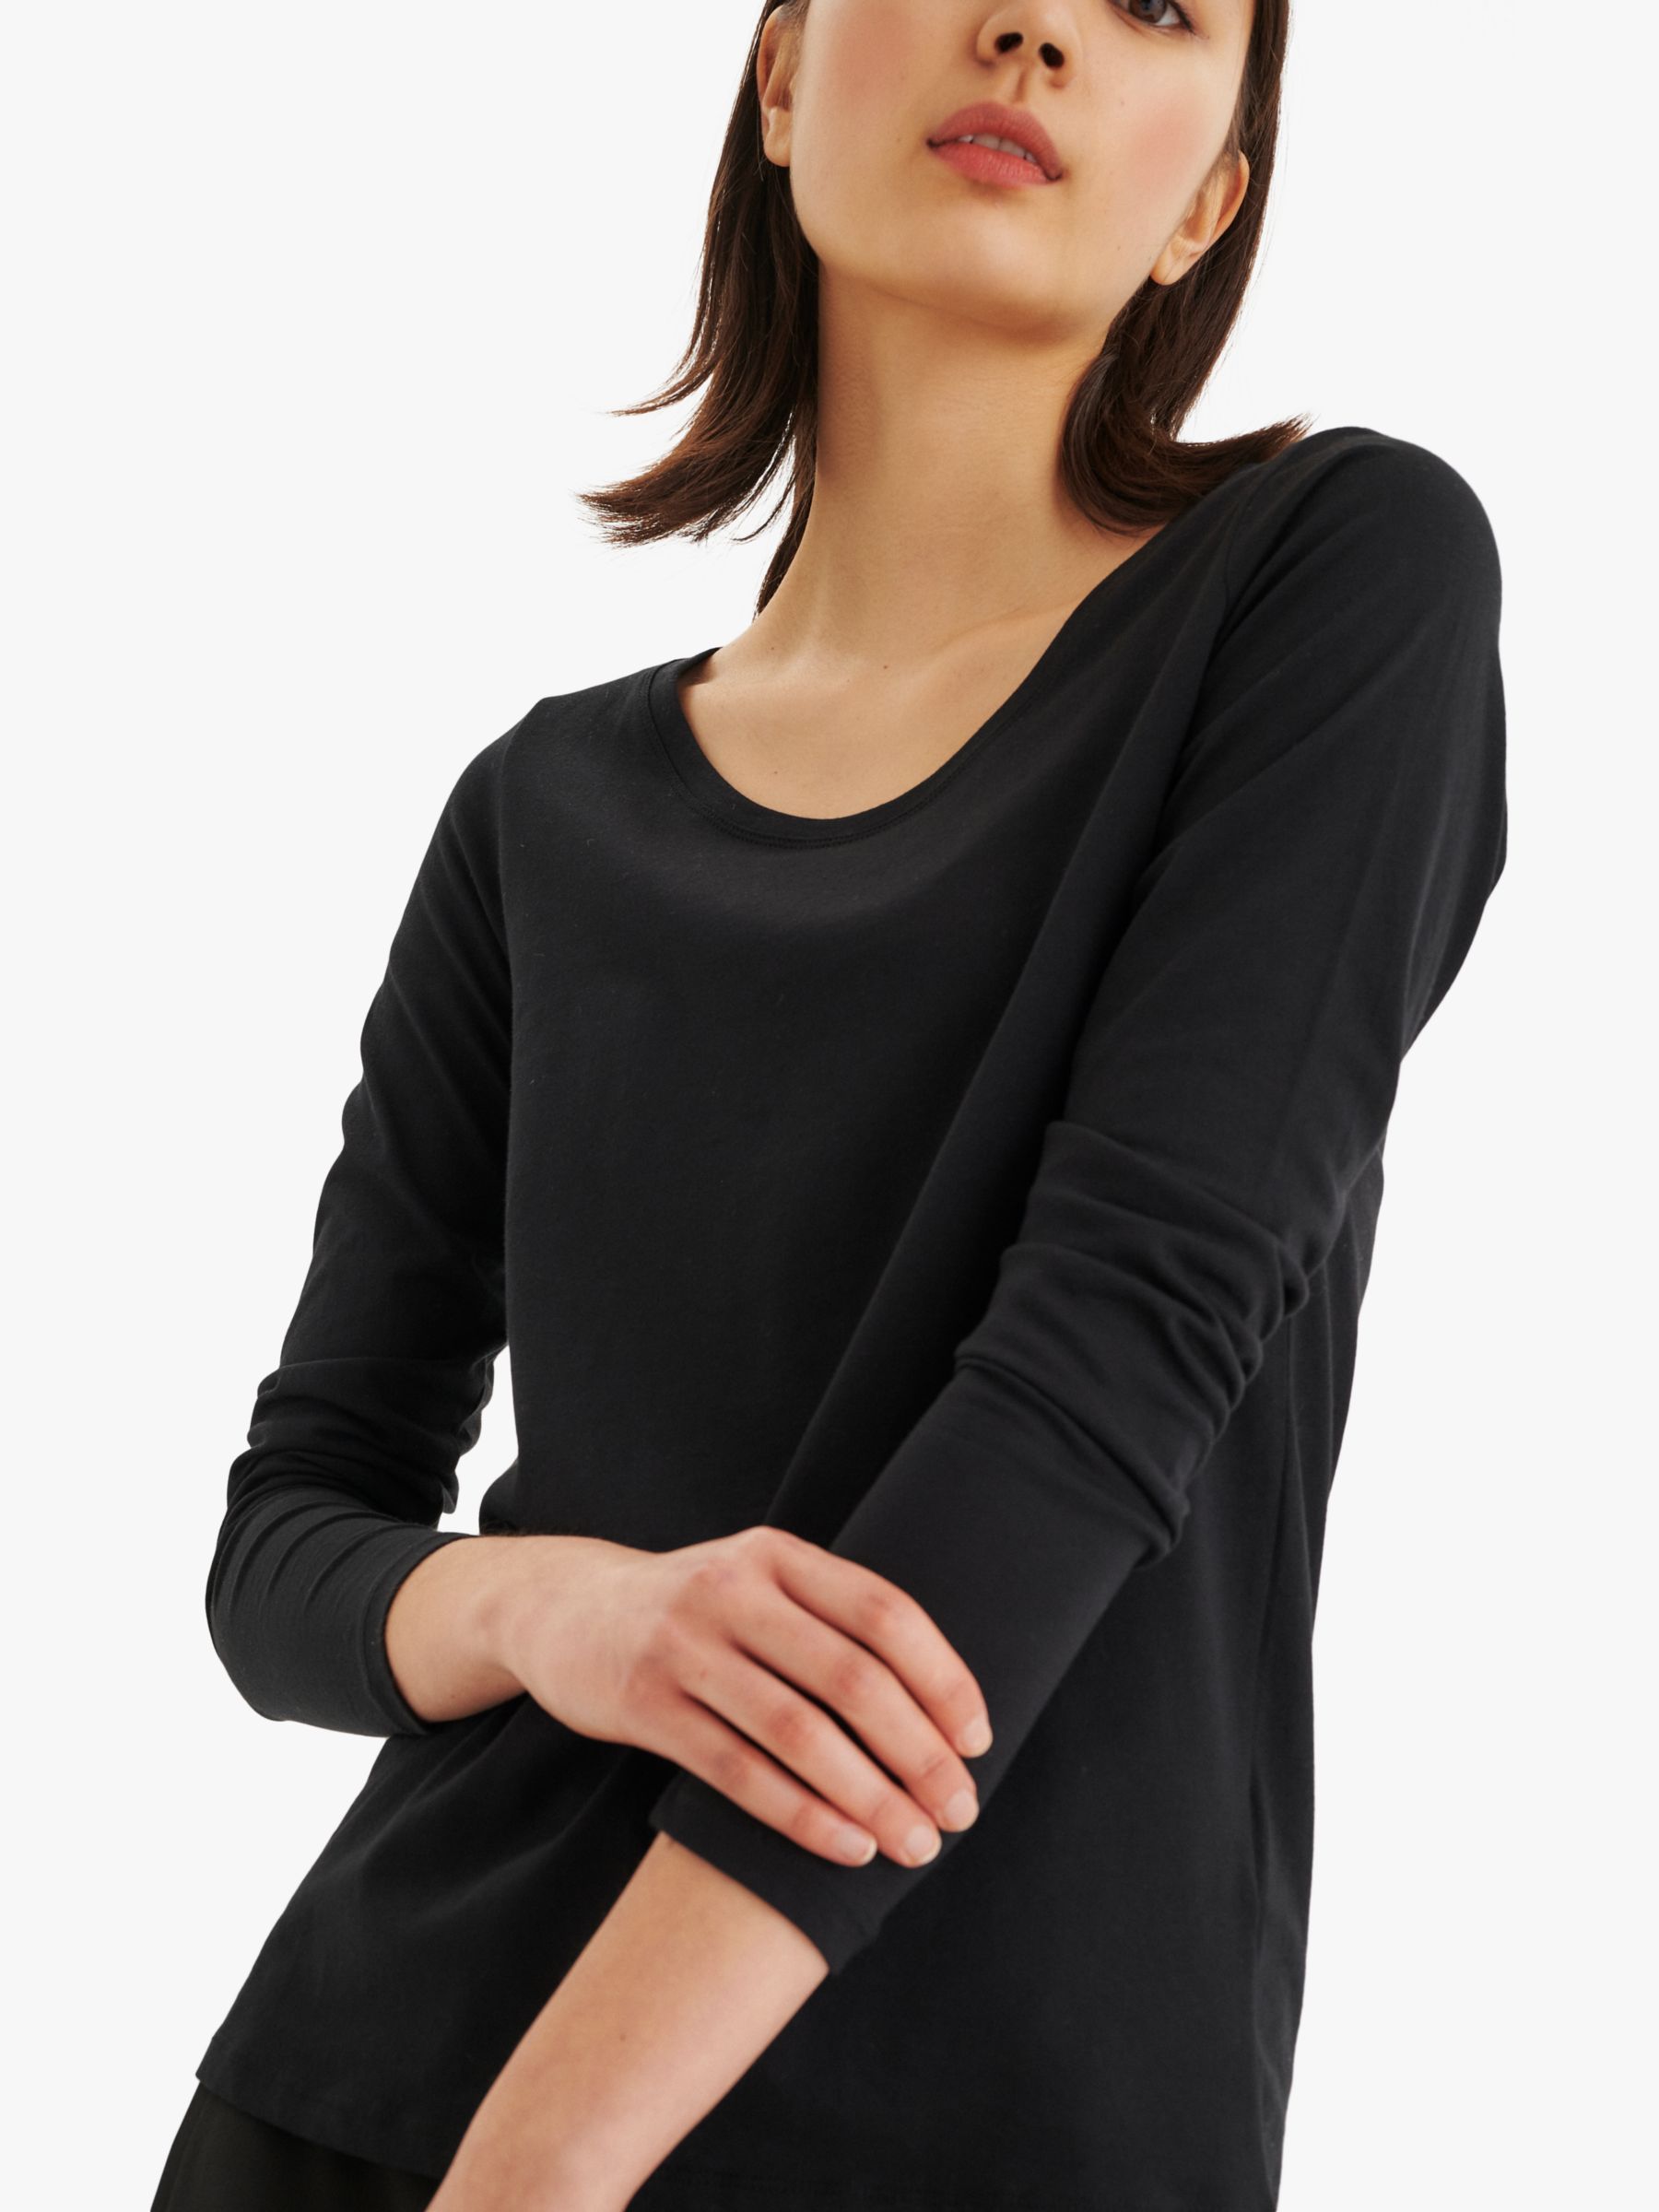 Футболка с длинным рукавом InWear Rena, черная футболка базовая rena v inwear цвет black